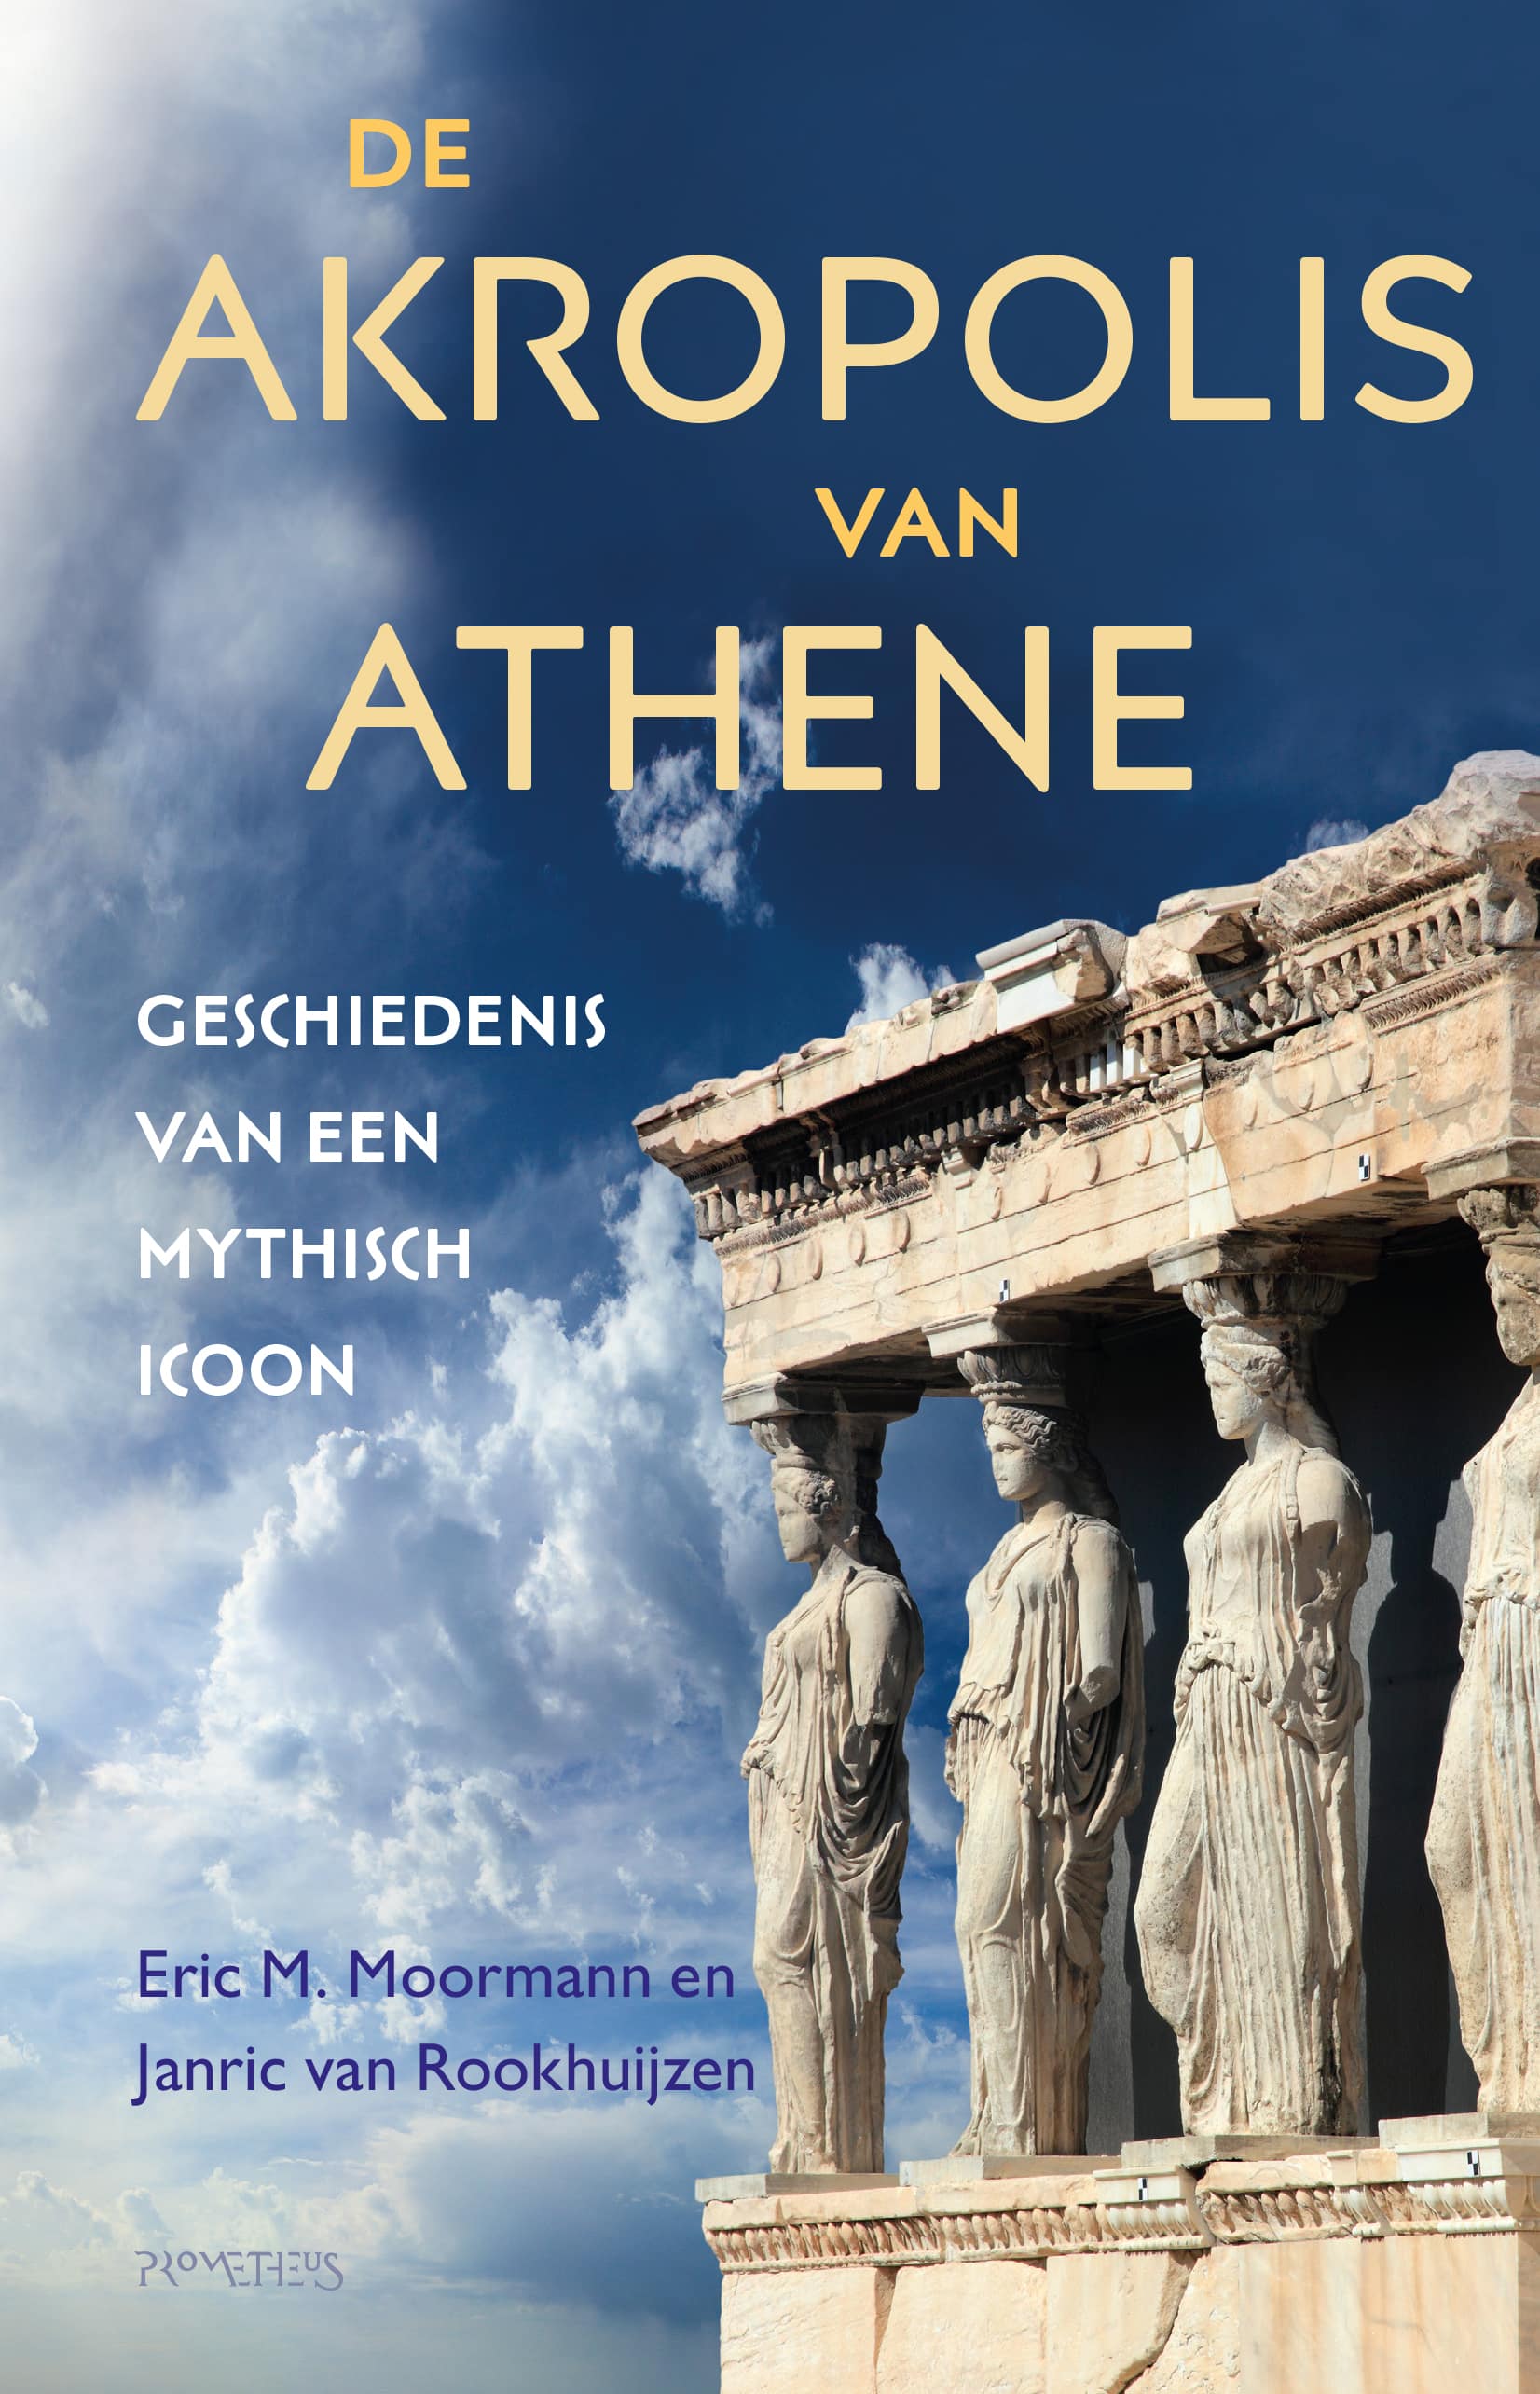 Moormann en Van Rookhuijzen ontvangen Homerusprijs voor ‘De Akropolis van Athene’